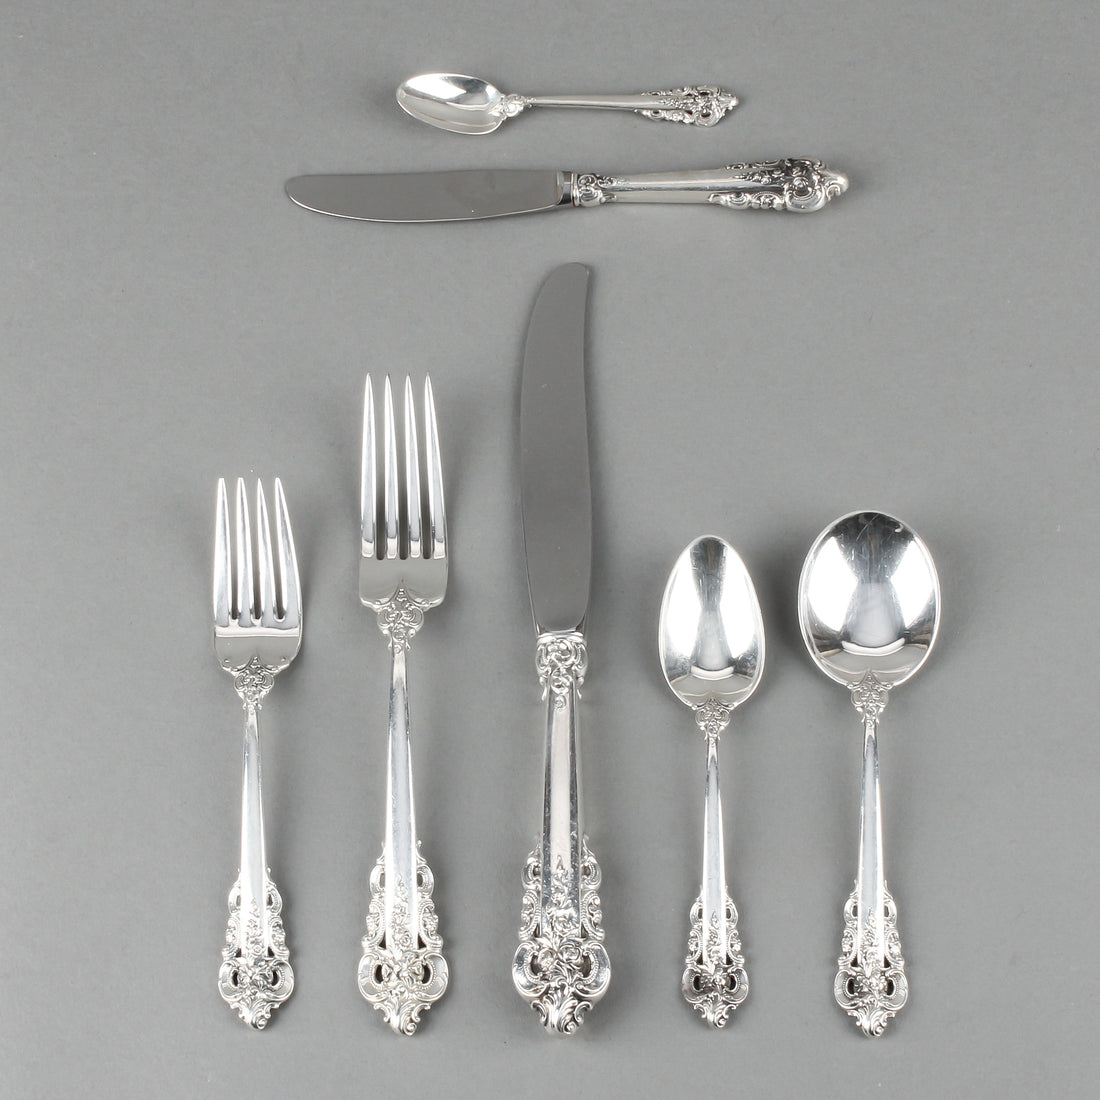 WALLACE Grande Baroque Sterling Silver Flatware - 81 Pieces